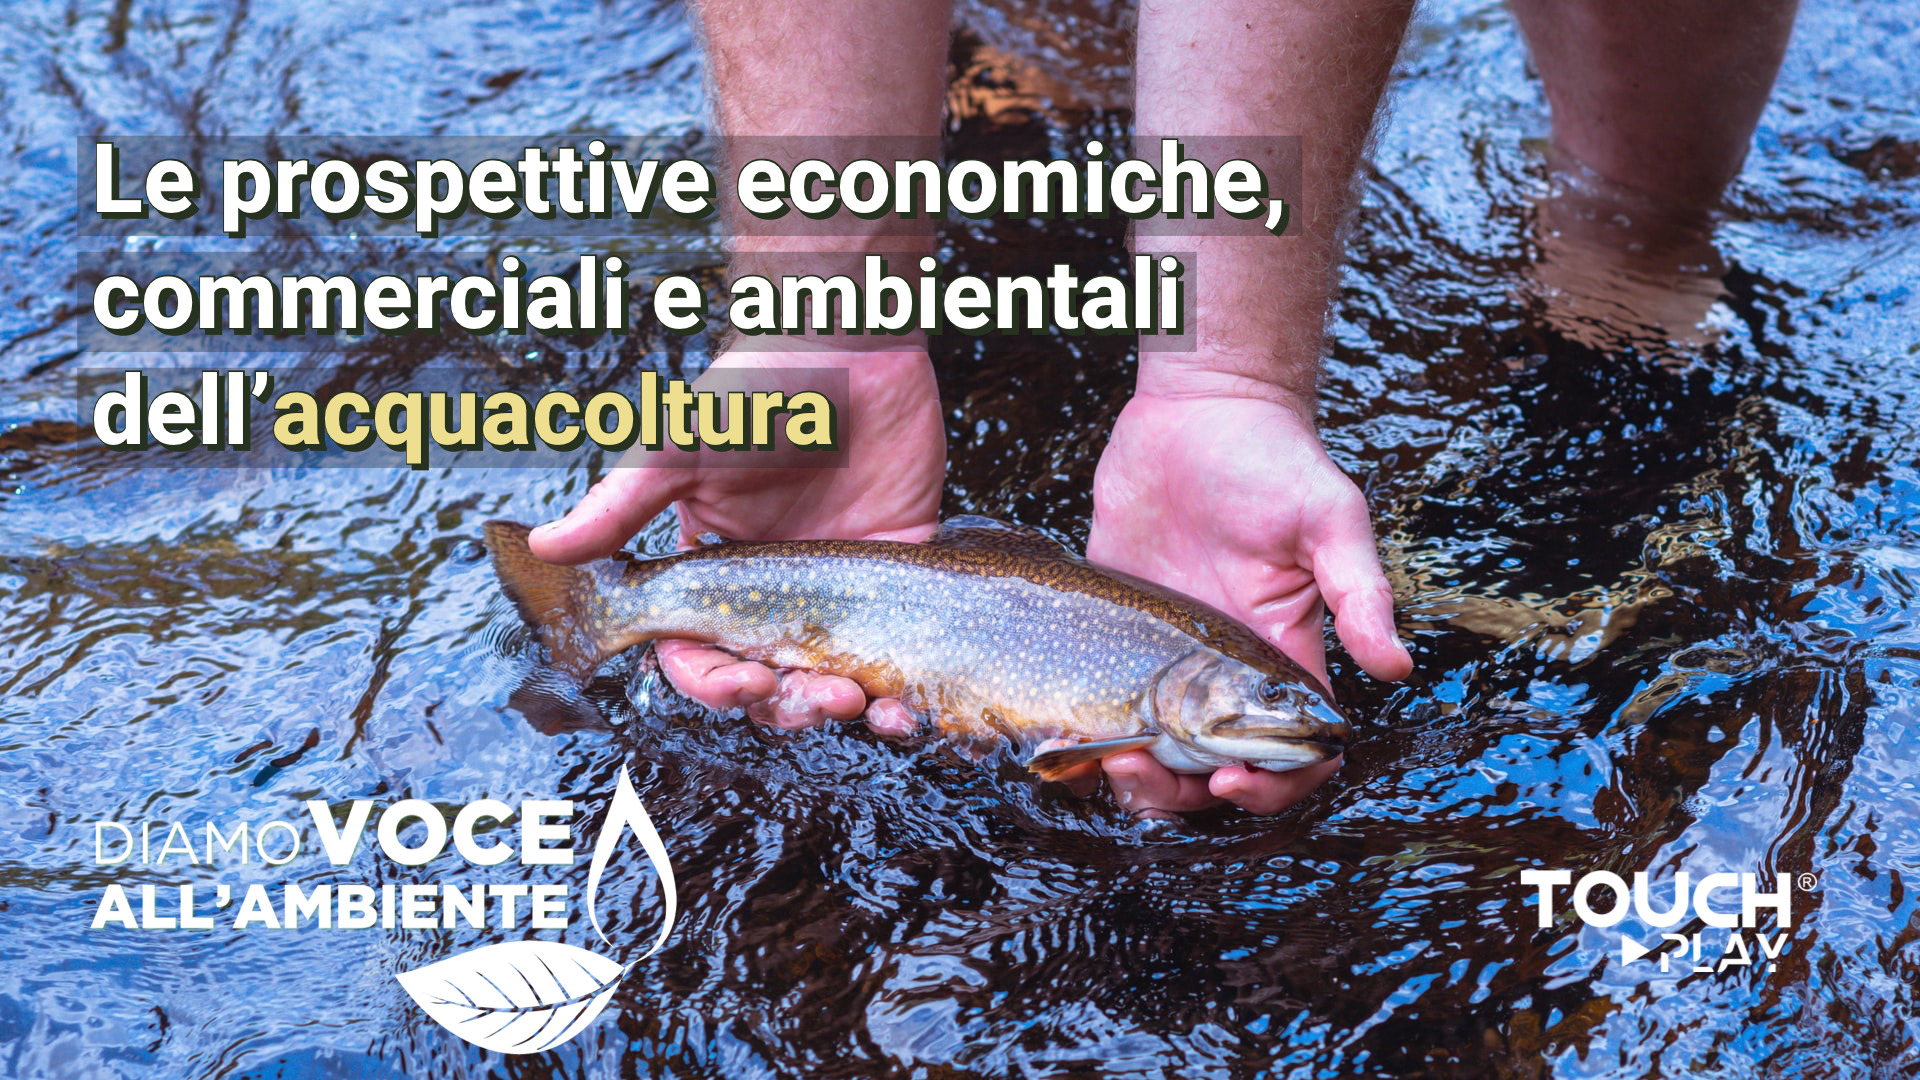 Le prospettive economiche, commerciali e ambientali dell’acquacoltura